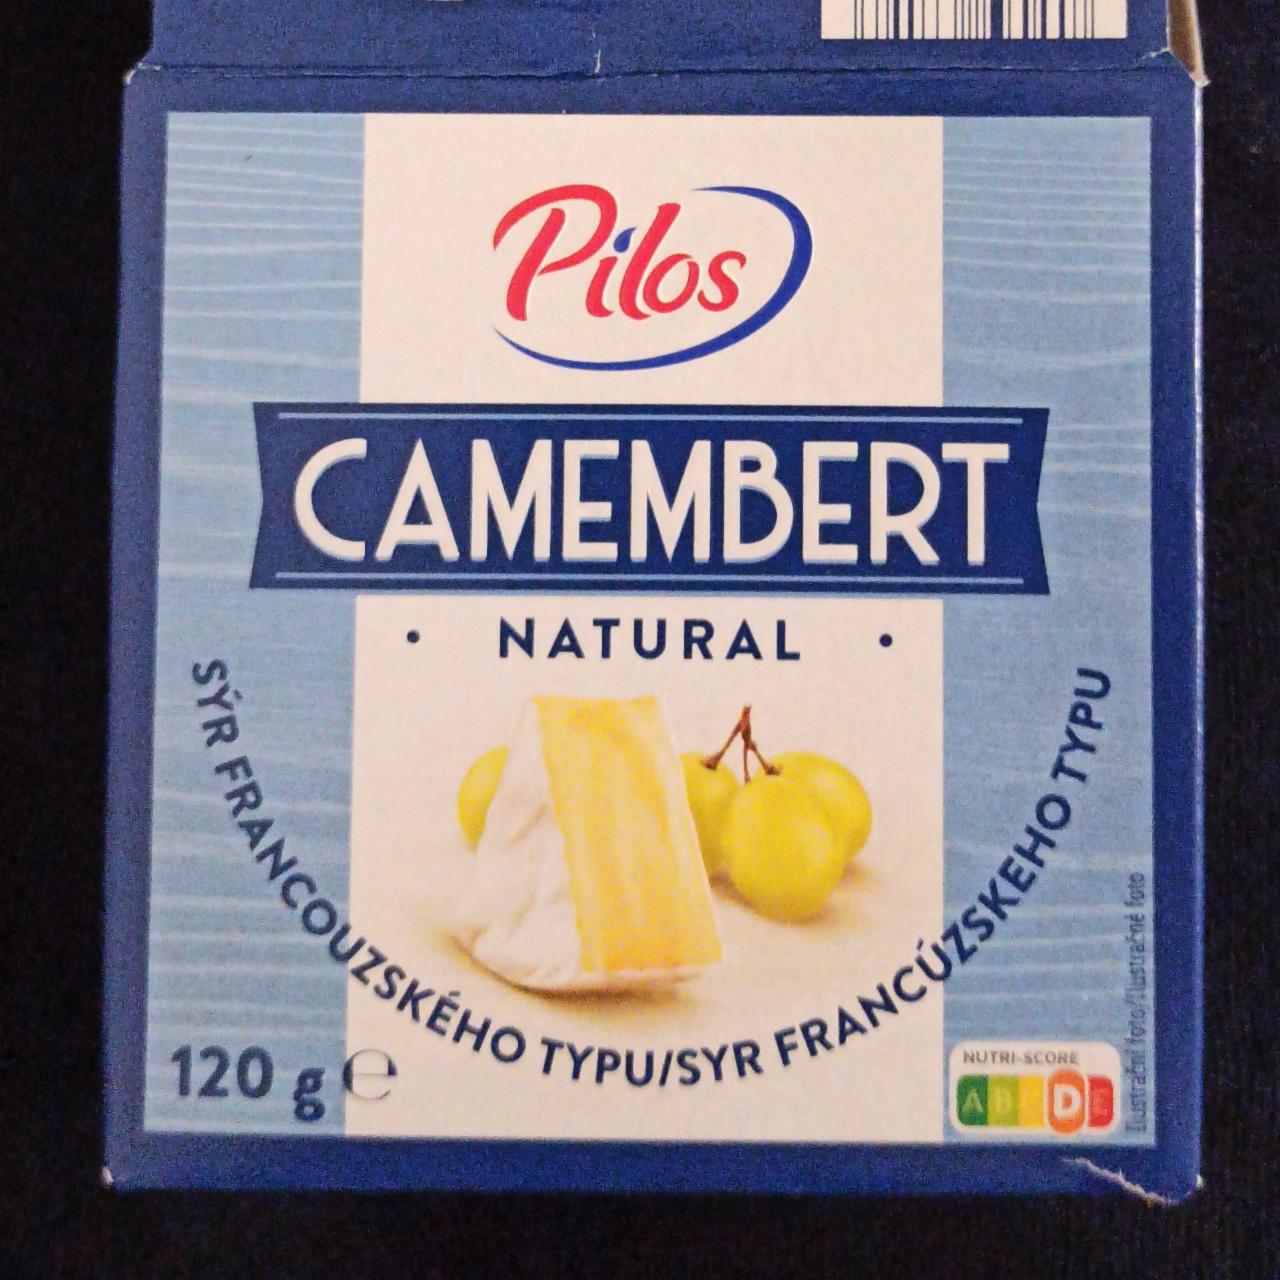 Fotografie - Camembert naturalny Pilos